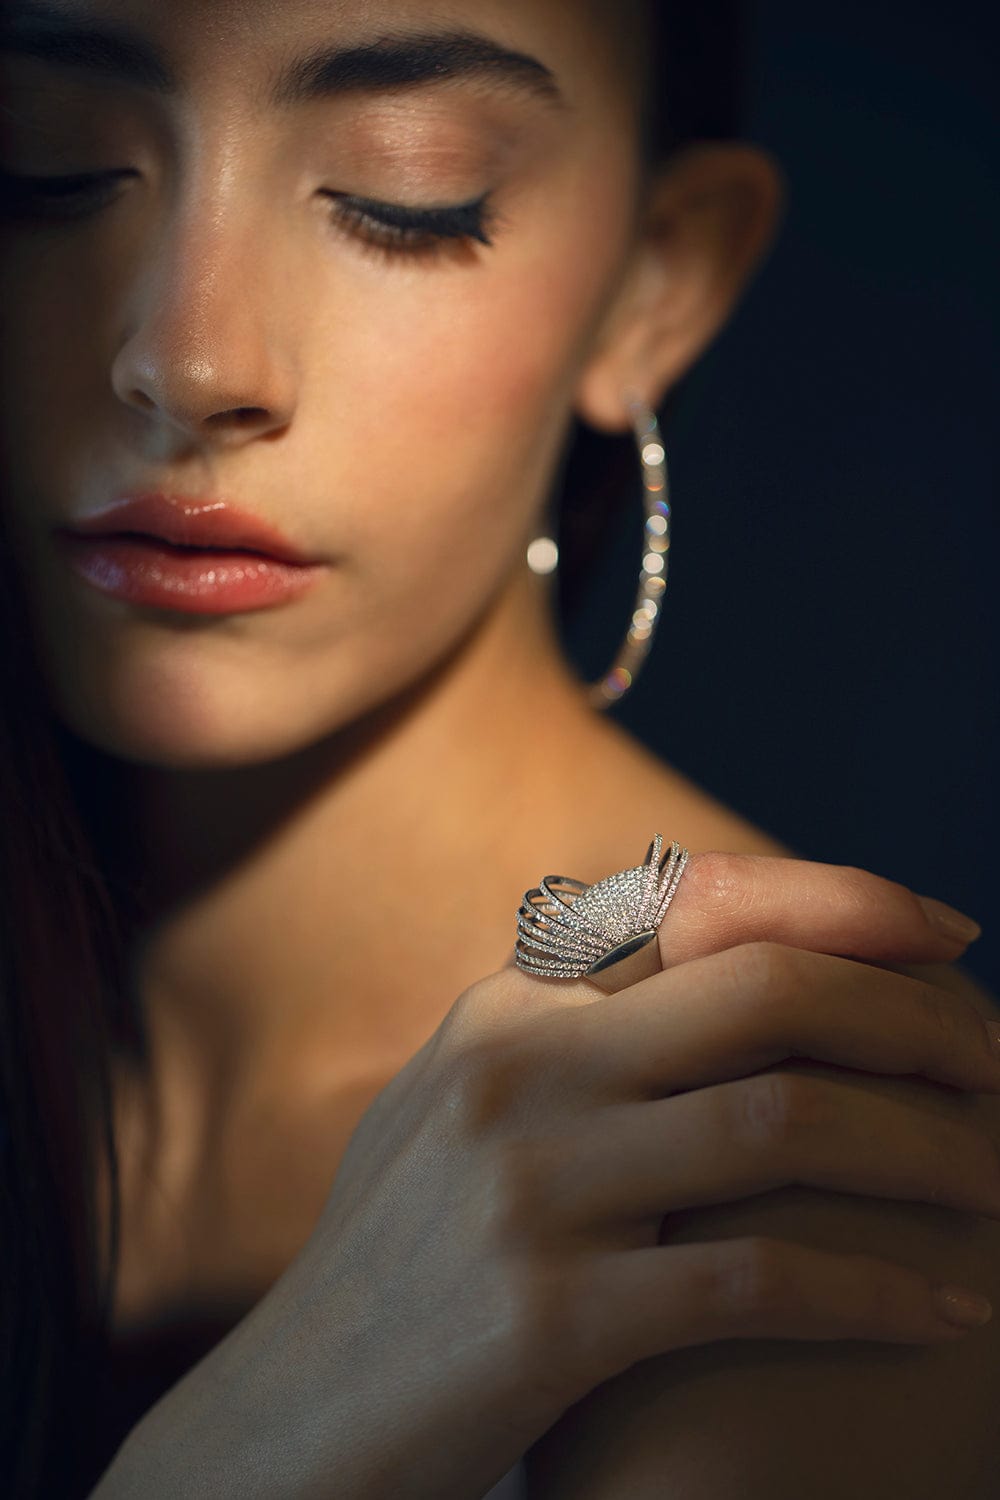 MATTIA CIELO-Pavone Diamond Ring-WHITE GOLD